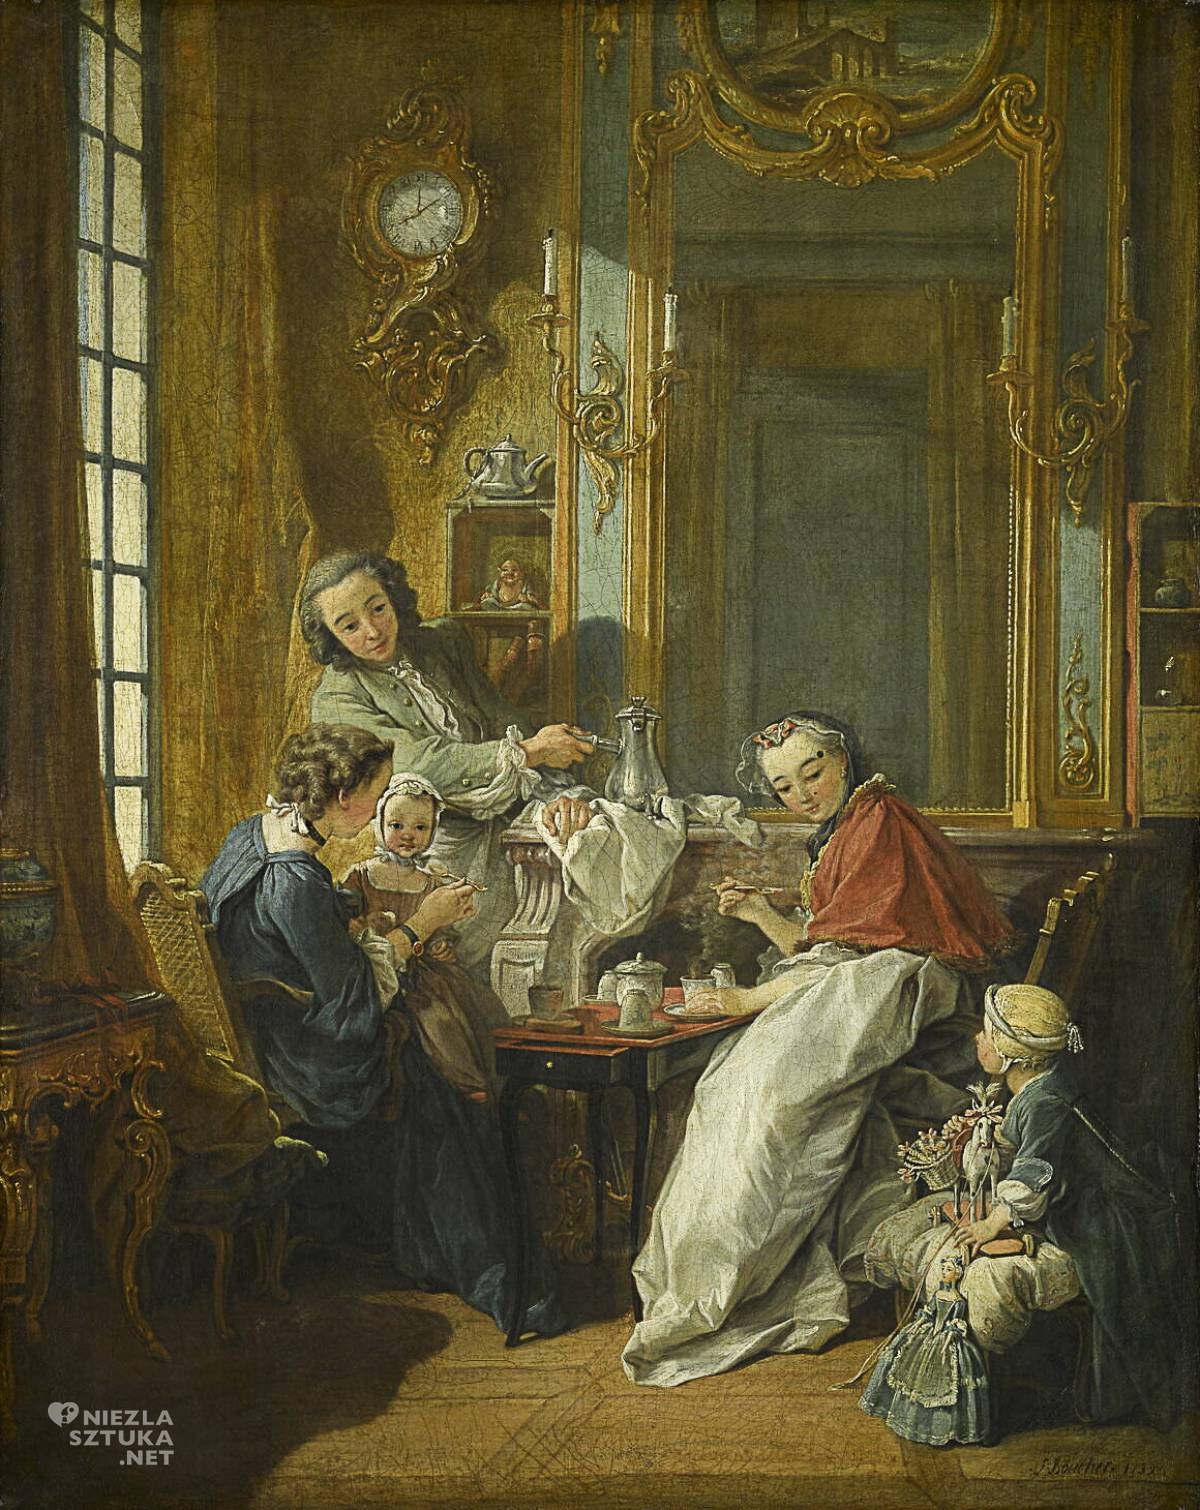 François Boucher, Śniadanie, Le déjeuner, sztuka francuska, scenka rodzajowa, niezła sztuka